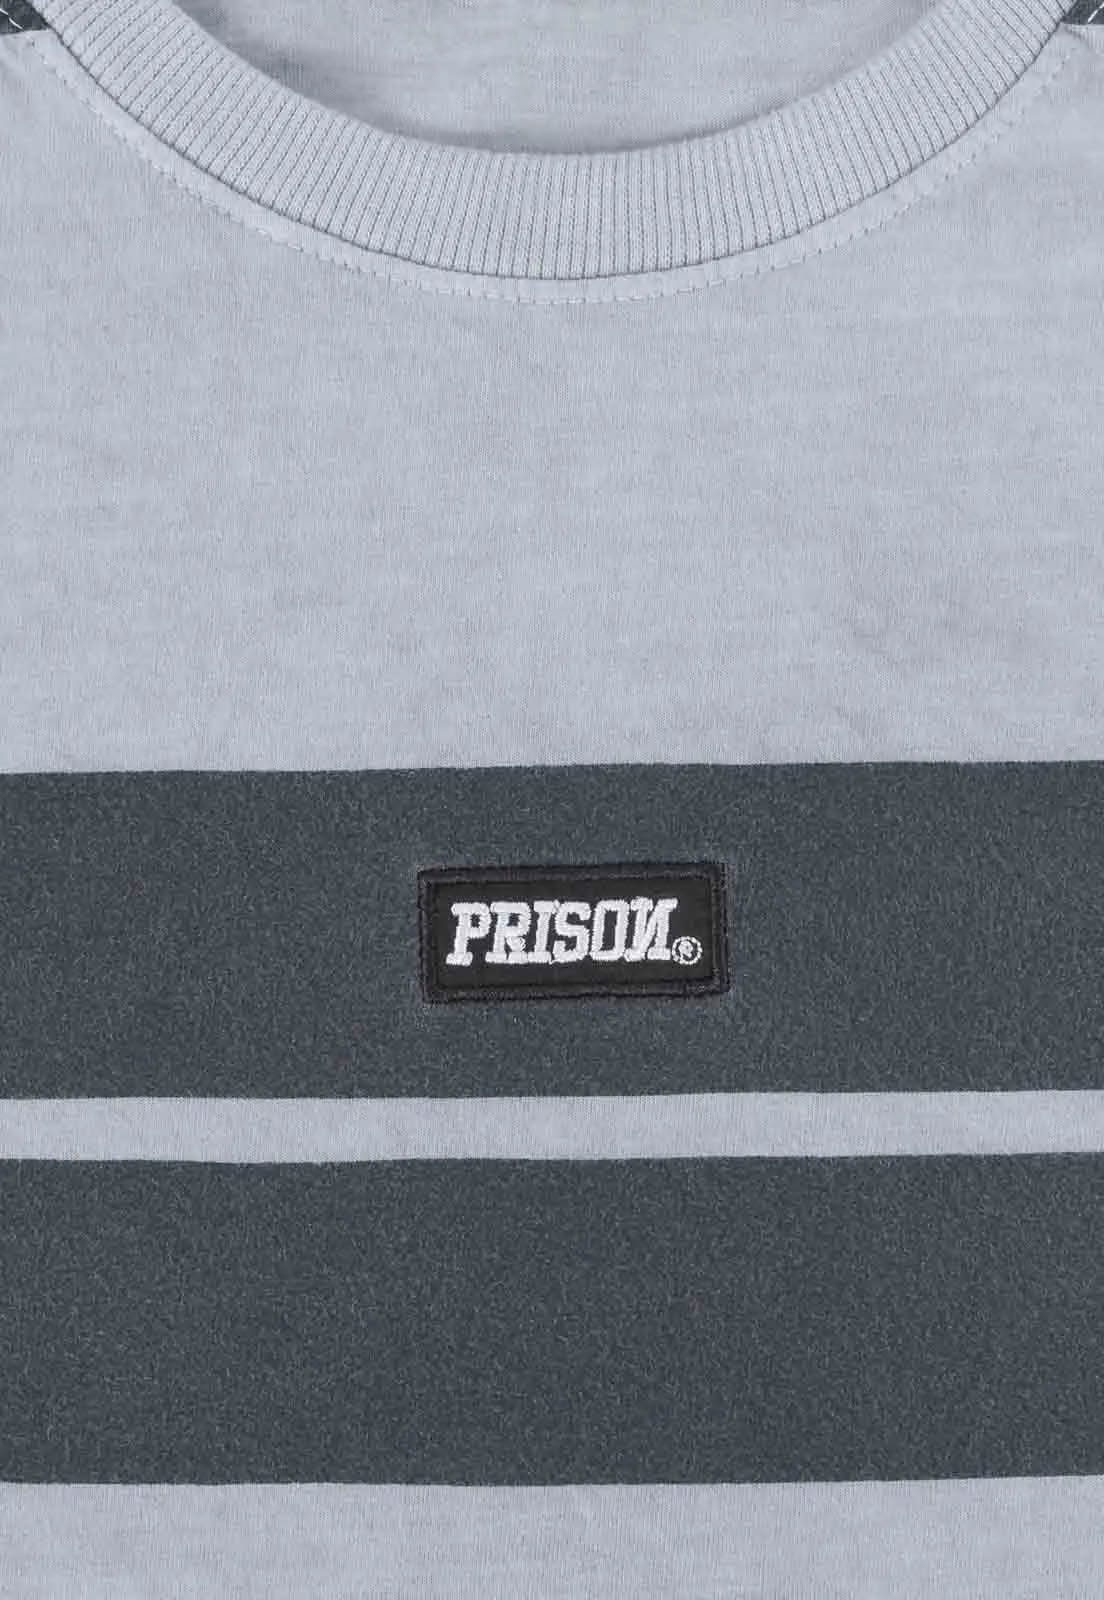 Camiseta Prison Listrada Gray Retro